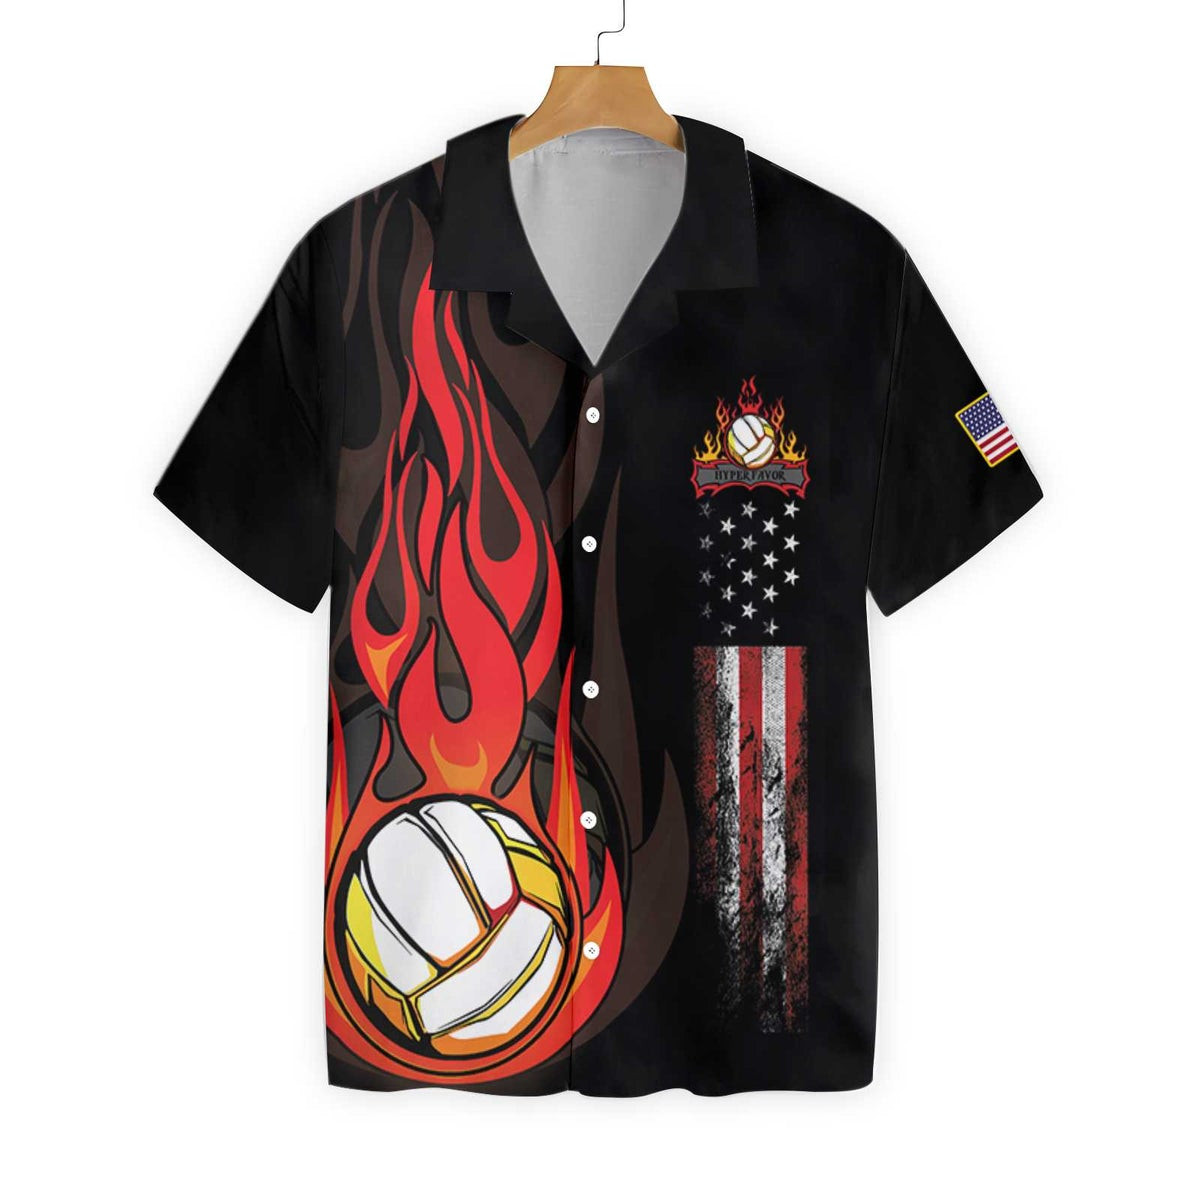 Volleyball Flame Hawaiian Shirt